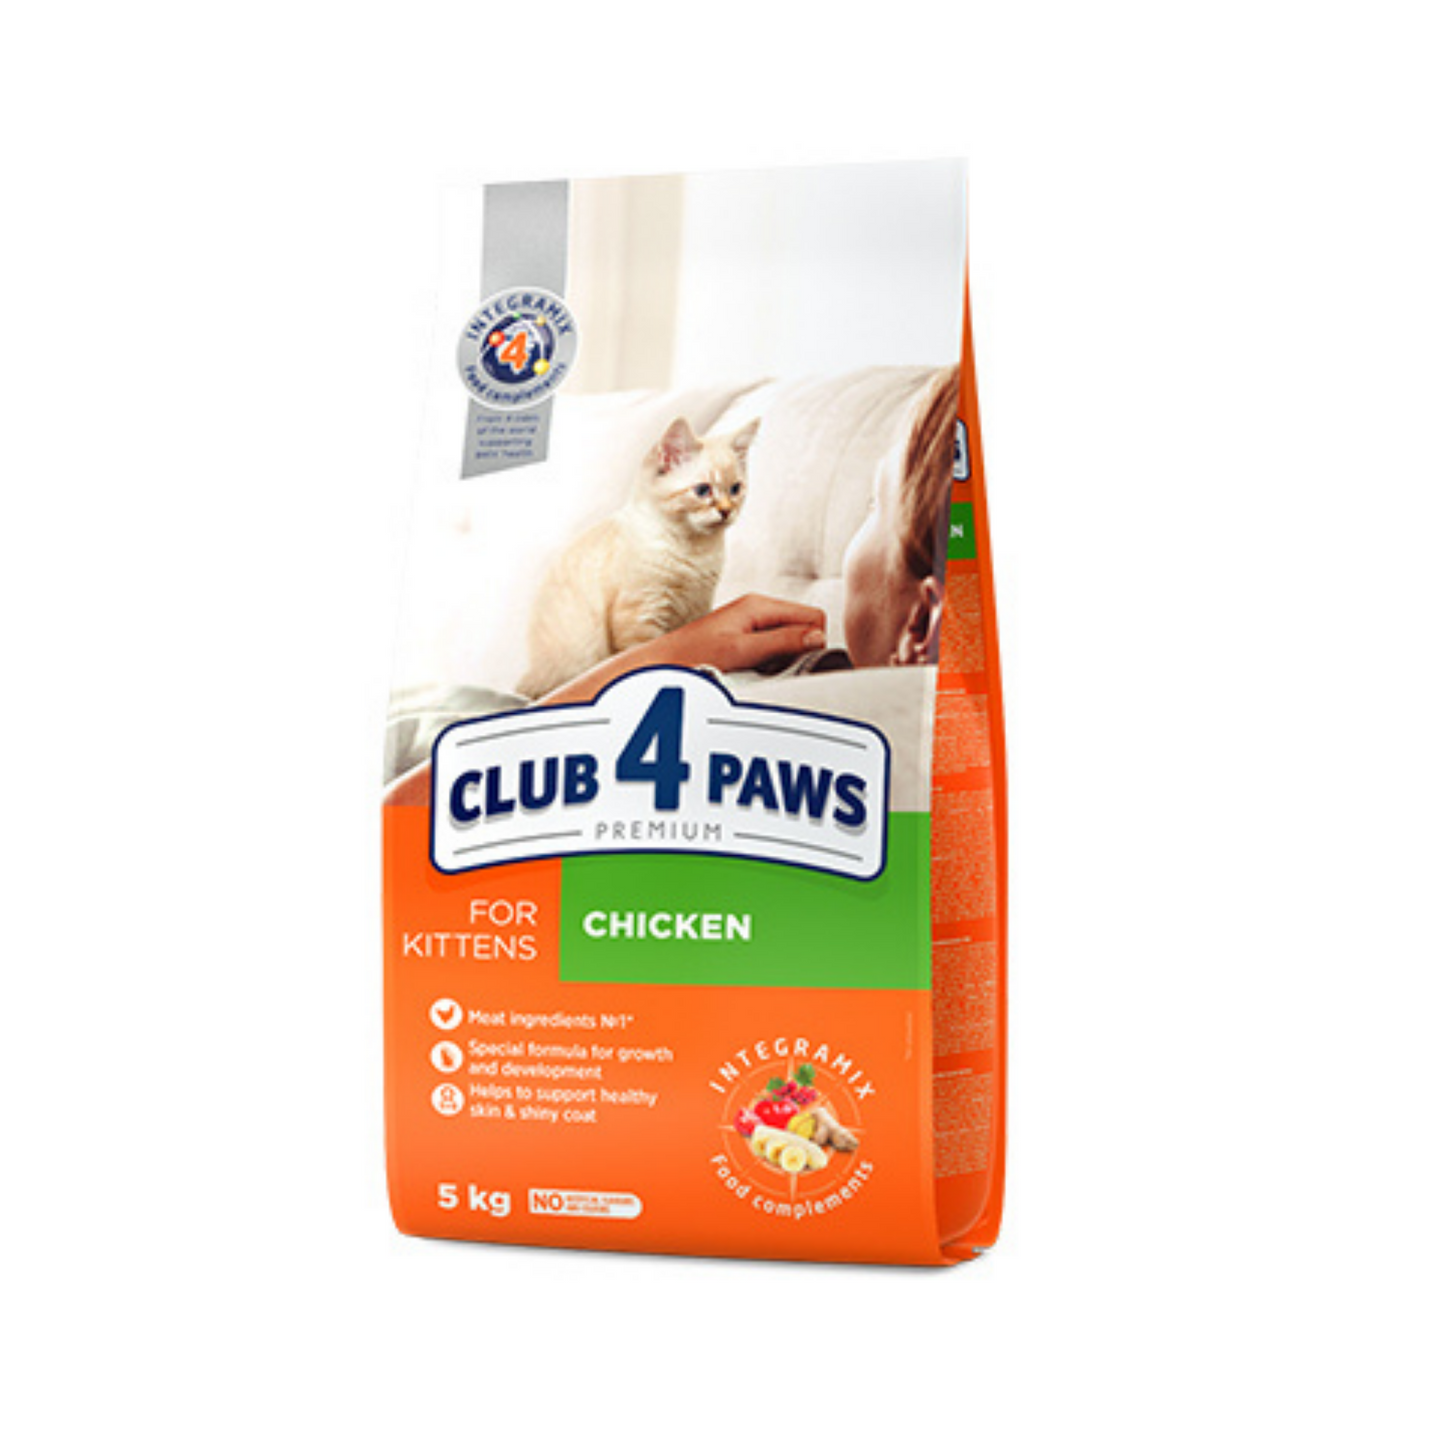 CLUB 4 PAWS Premium for Kitten Chicken